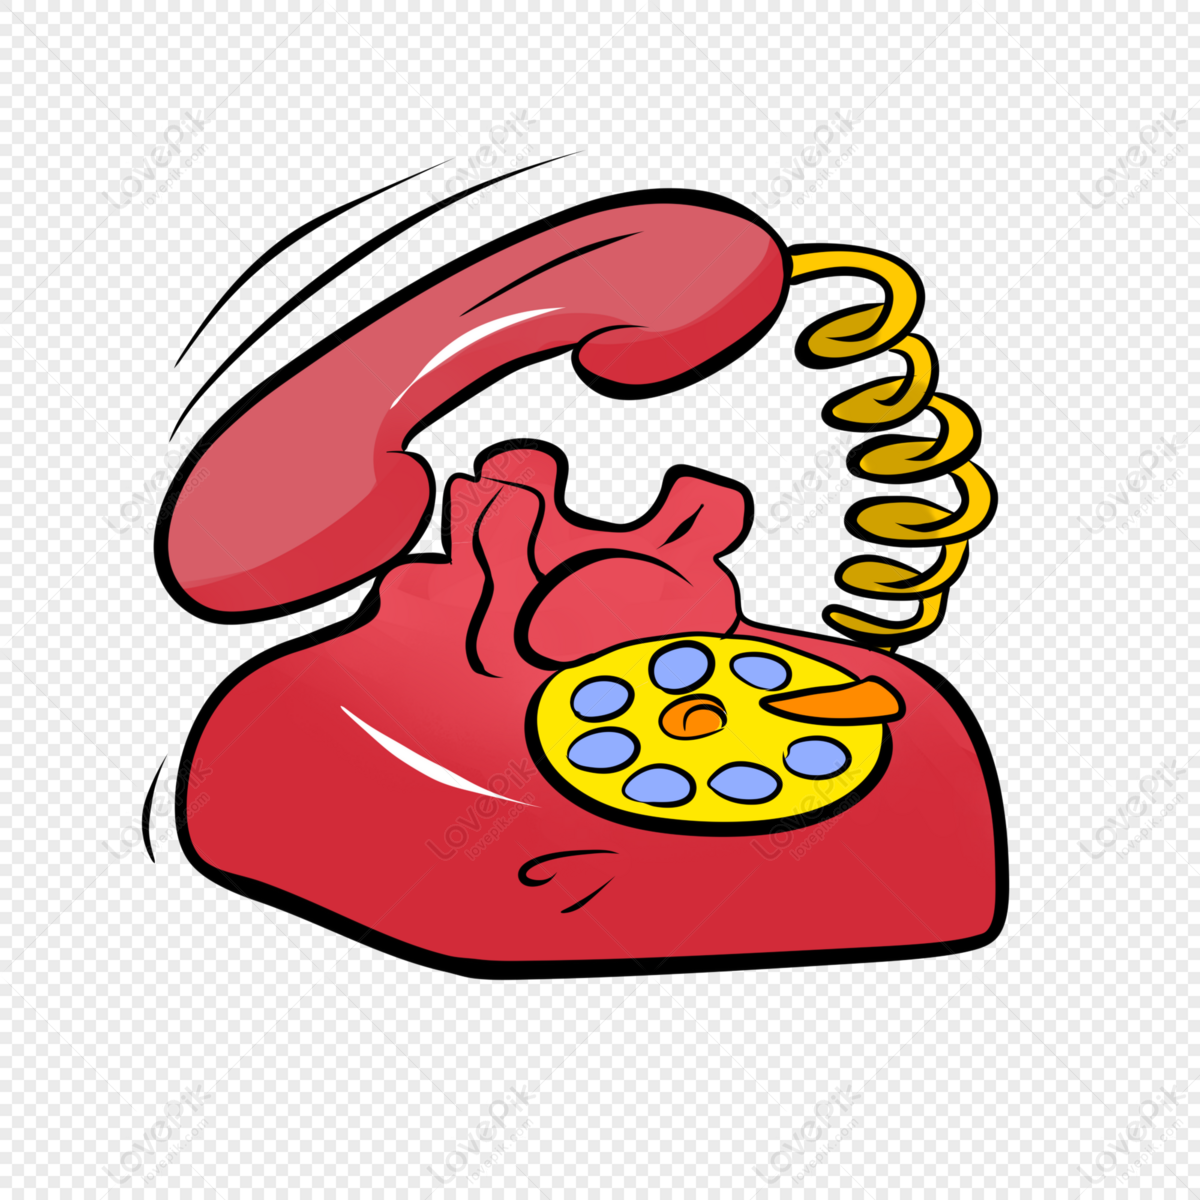 Телефон м ф. Телефон рисунок. Телефон мультяшные. Красный телефон мультяшный. Средства связи рисунок.